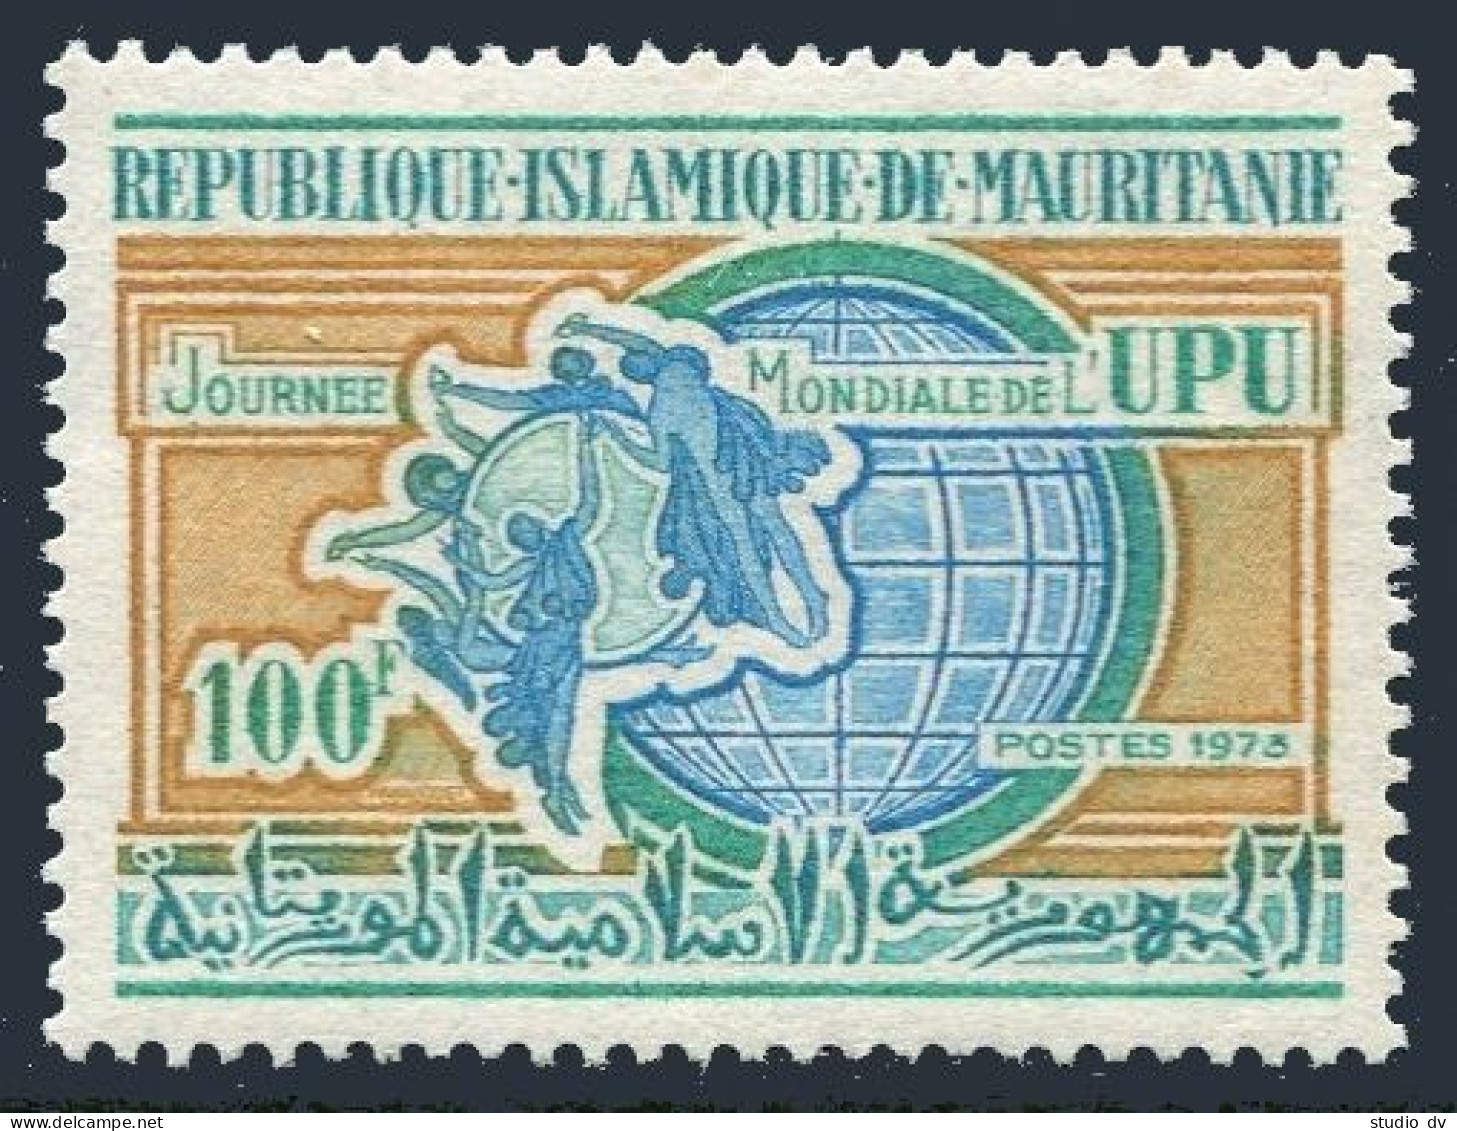 Mauritania 302, MNH. Michel 455. UPU Day 1973. Monument And Globe. - Mauritania (1960-...)